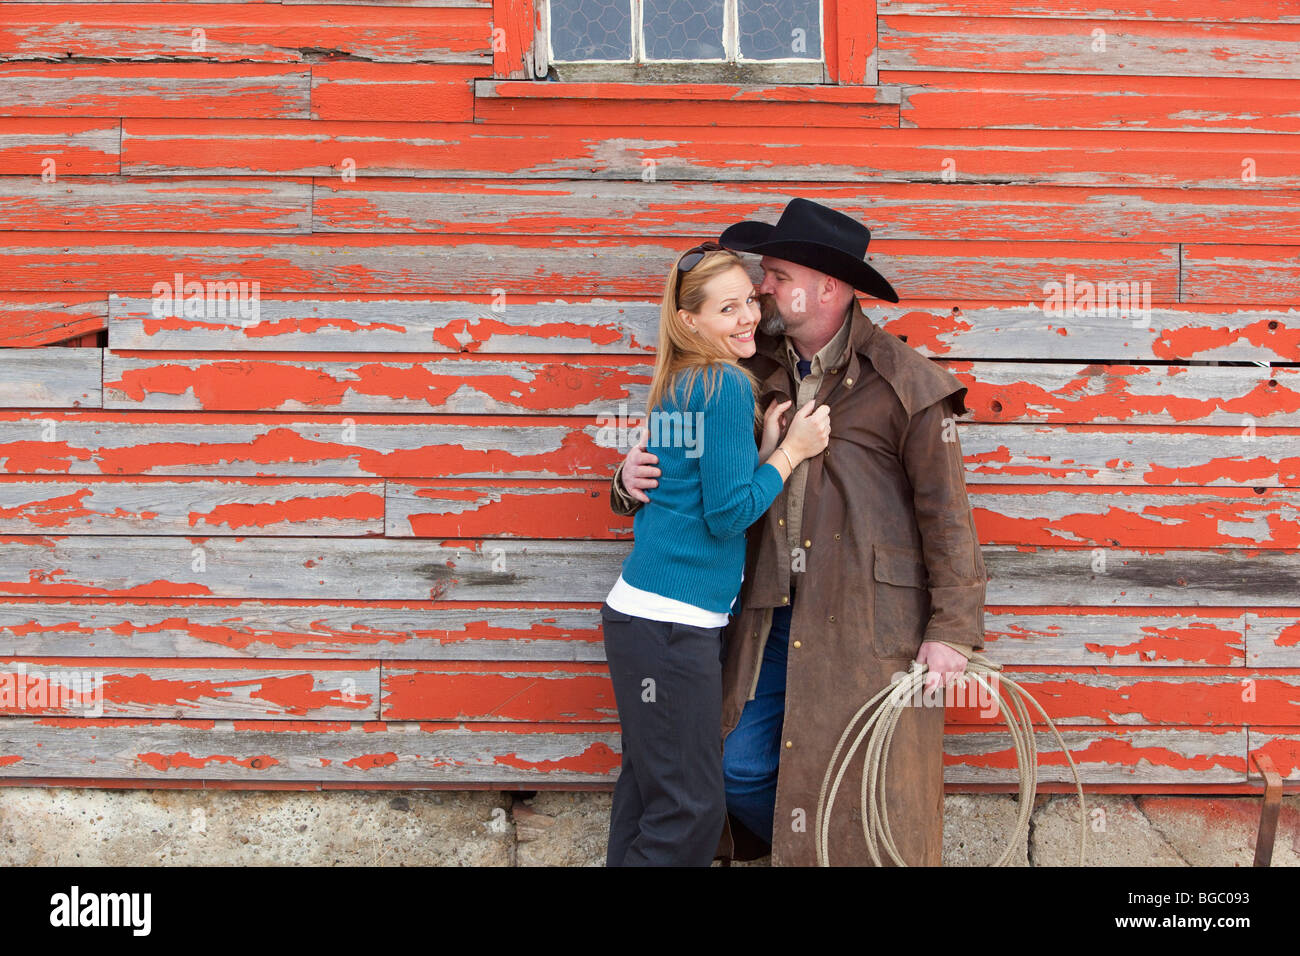 Cowboy kissing woman Stock Photo